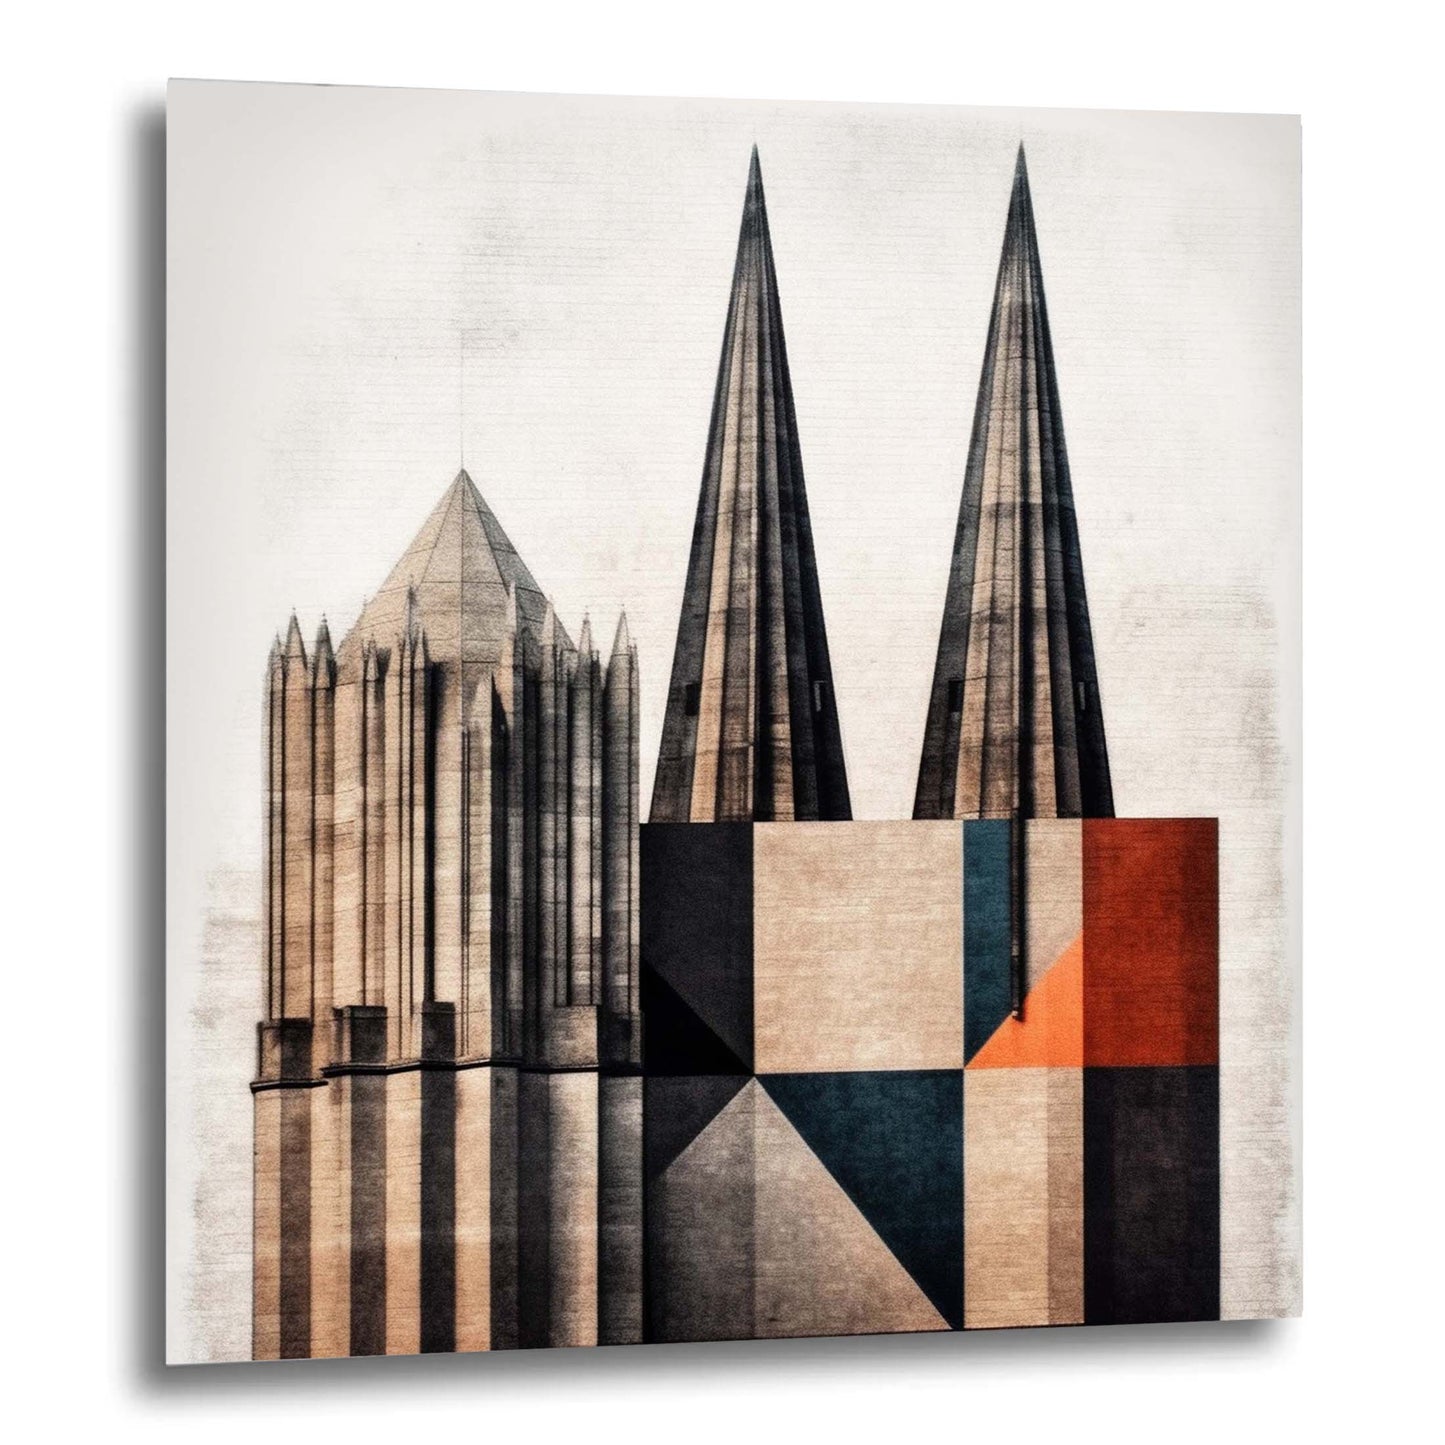 Cathédrale de Cologne - peinture murale dans le style du minimalisme